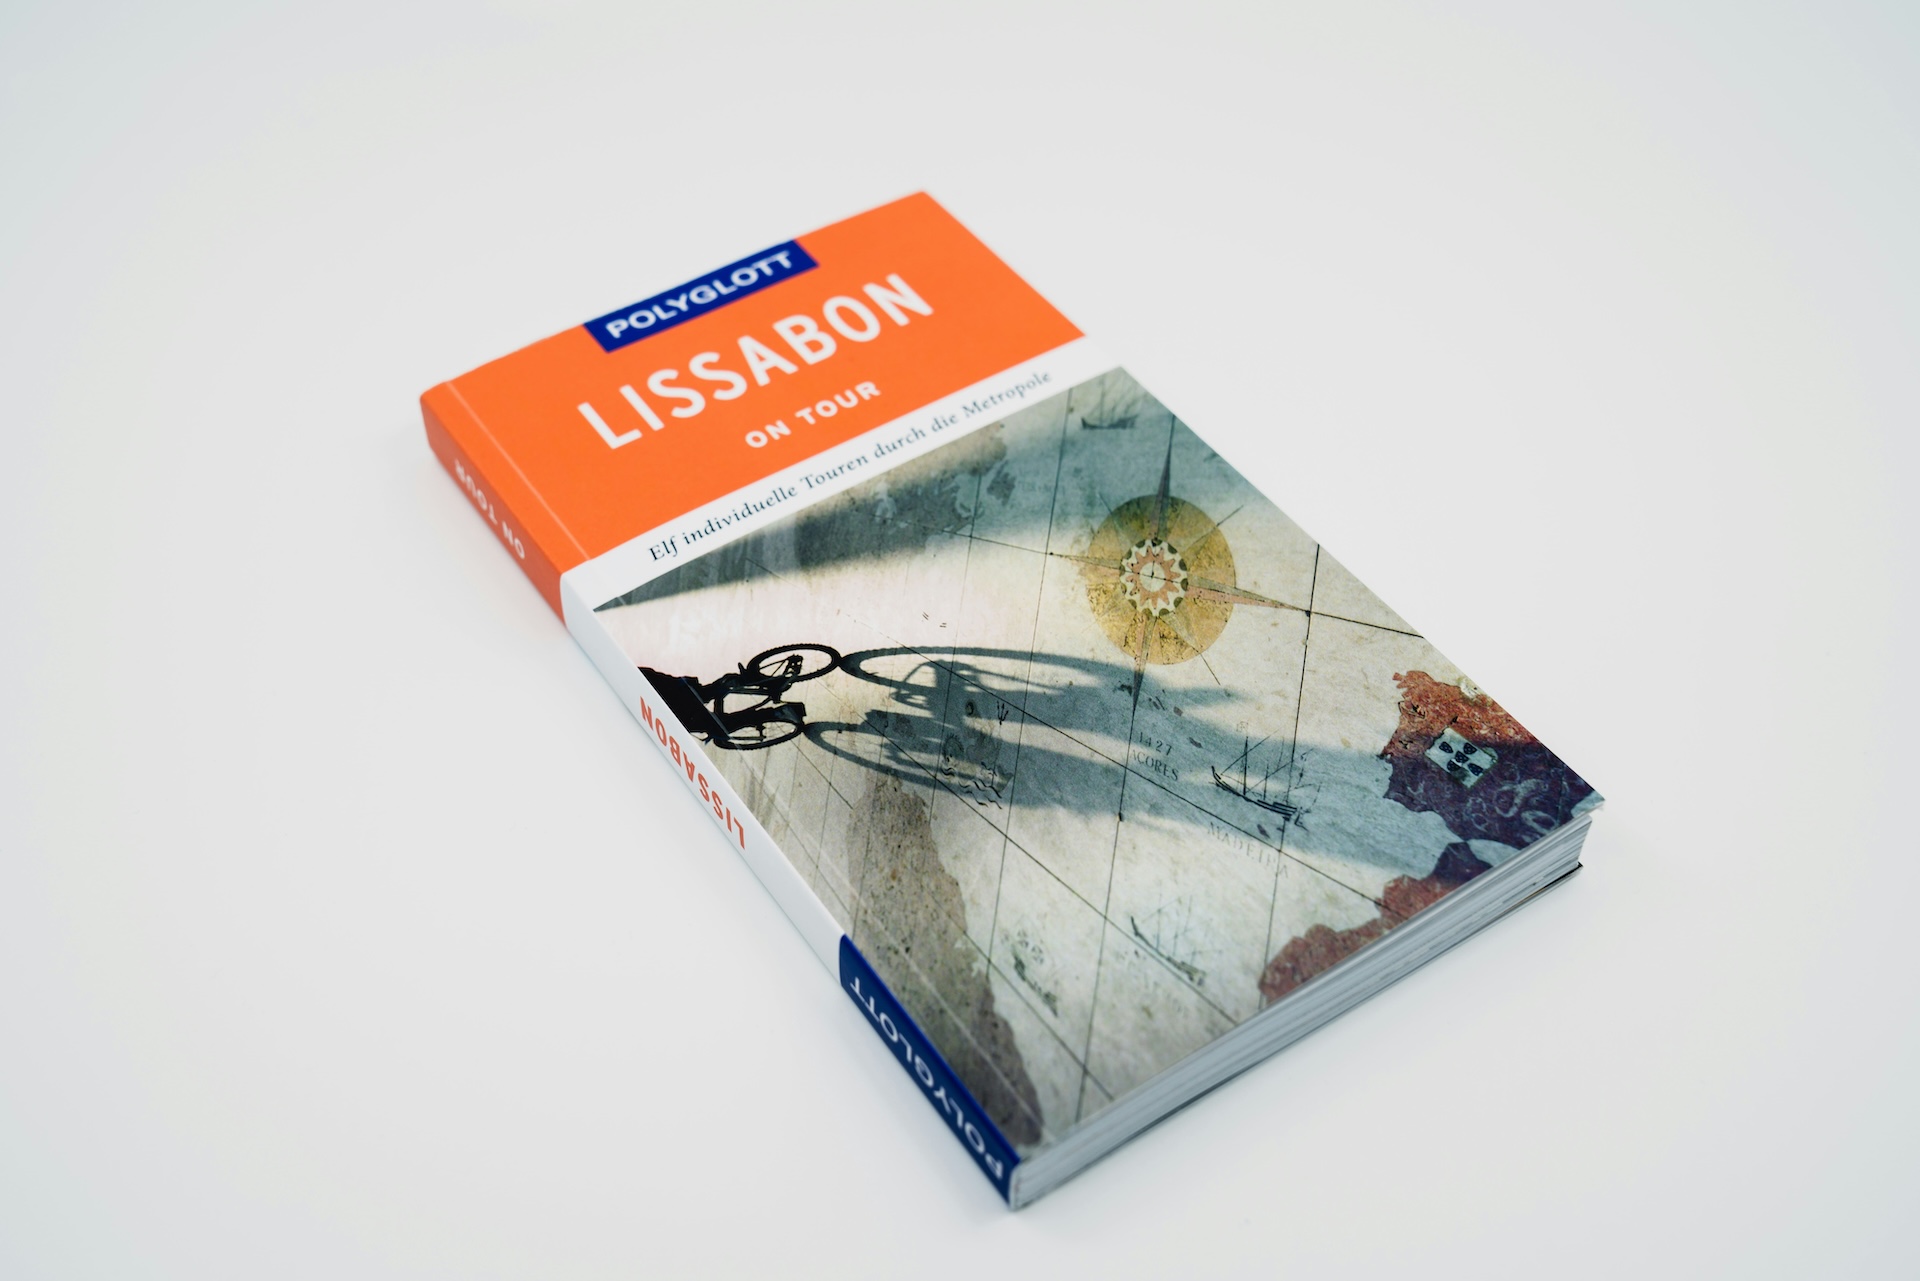 guide de voyage au format papier sur la thématique de Lisbonne au Portugal